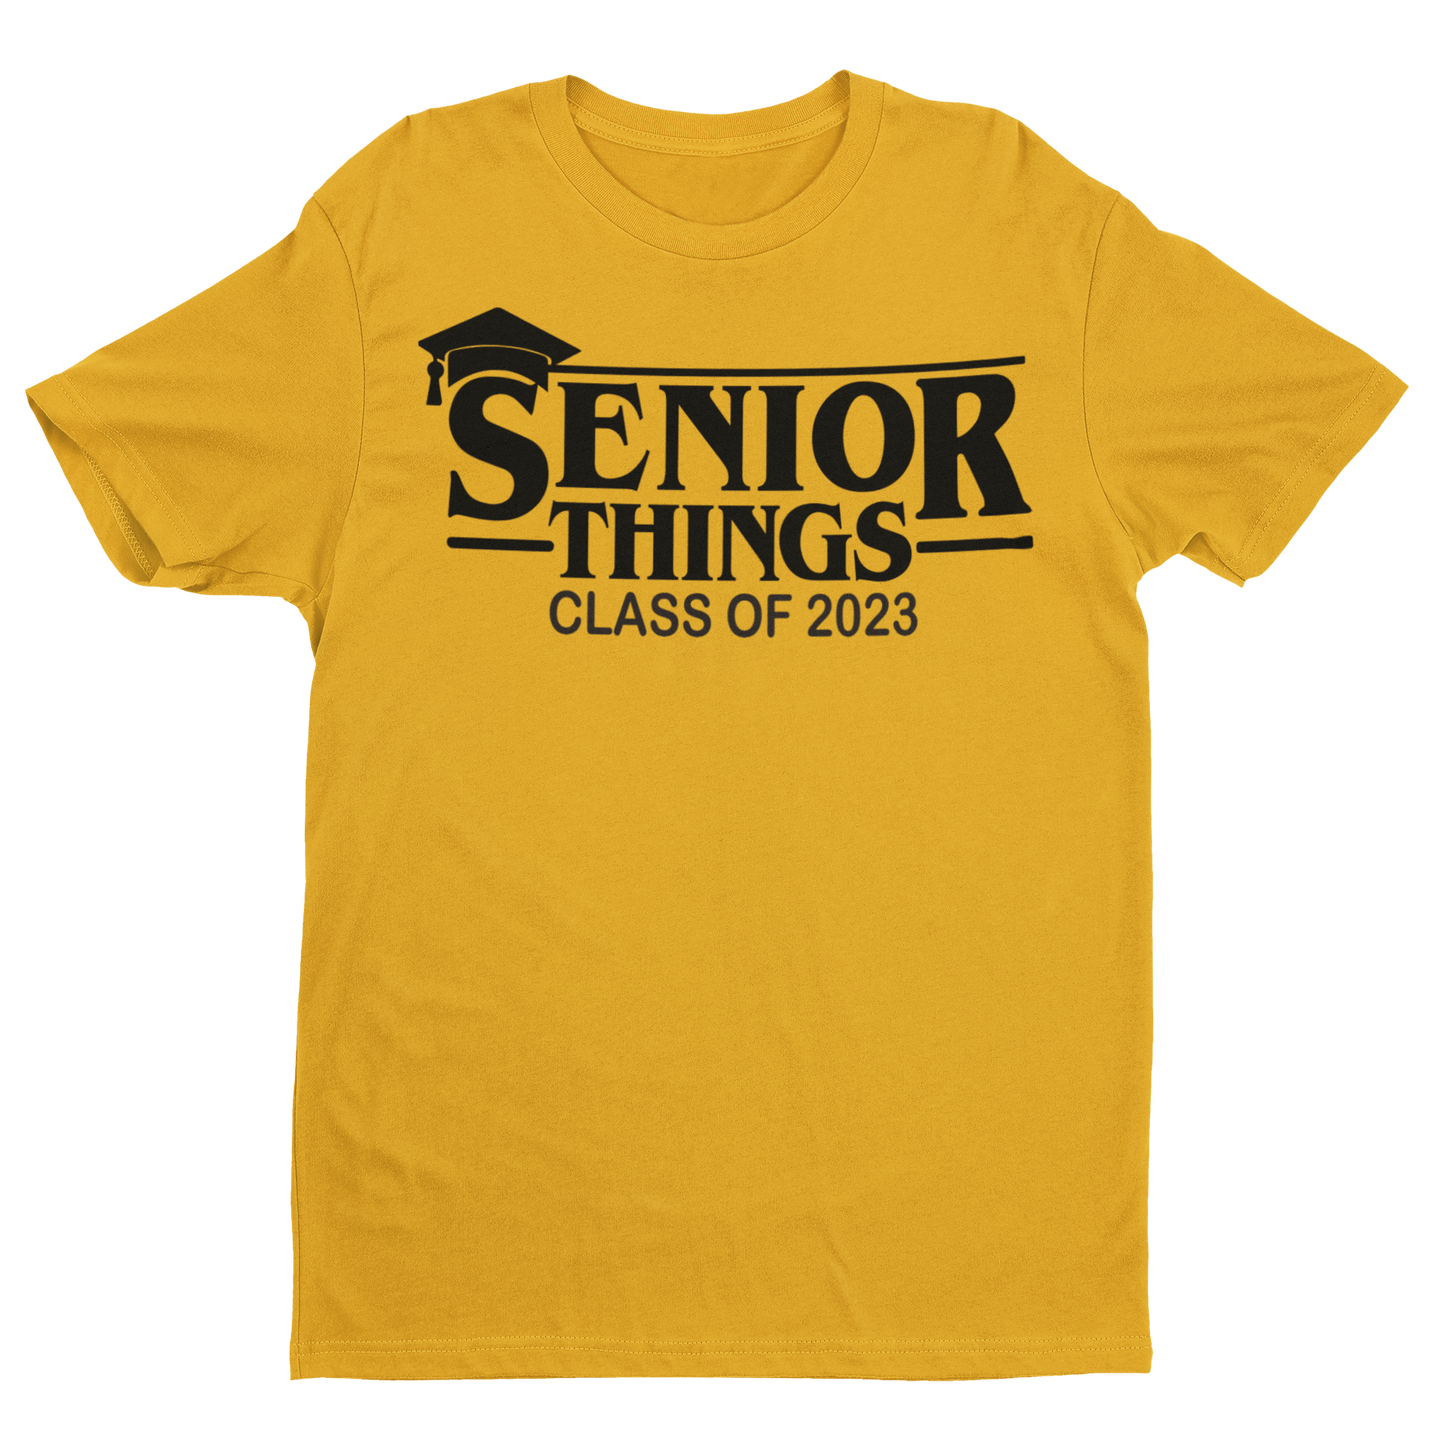 Senior Things '23 Tee